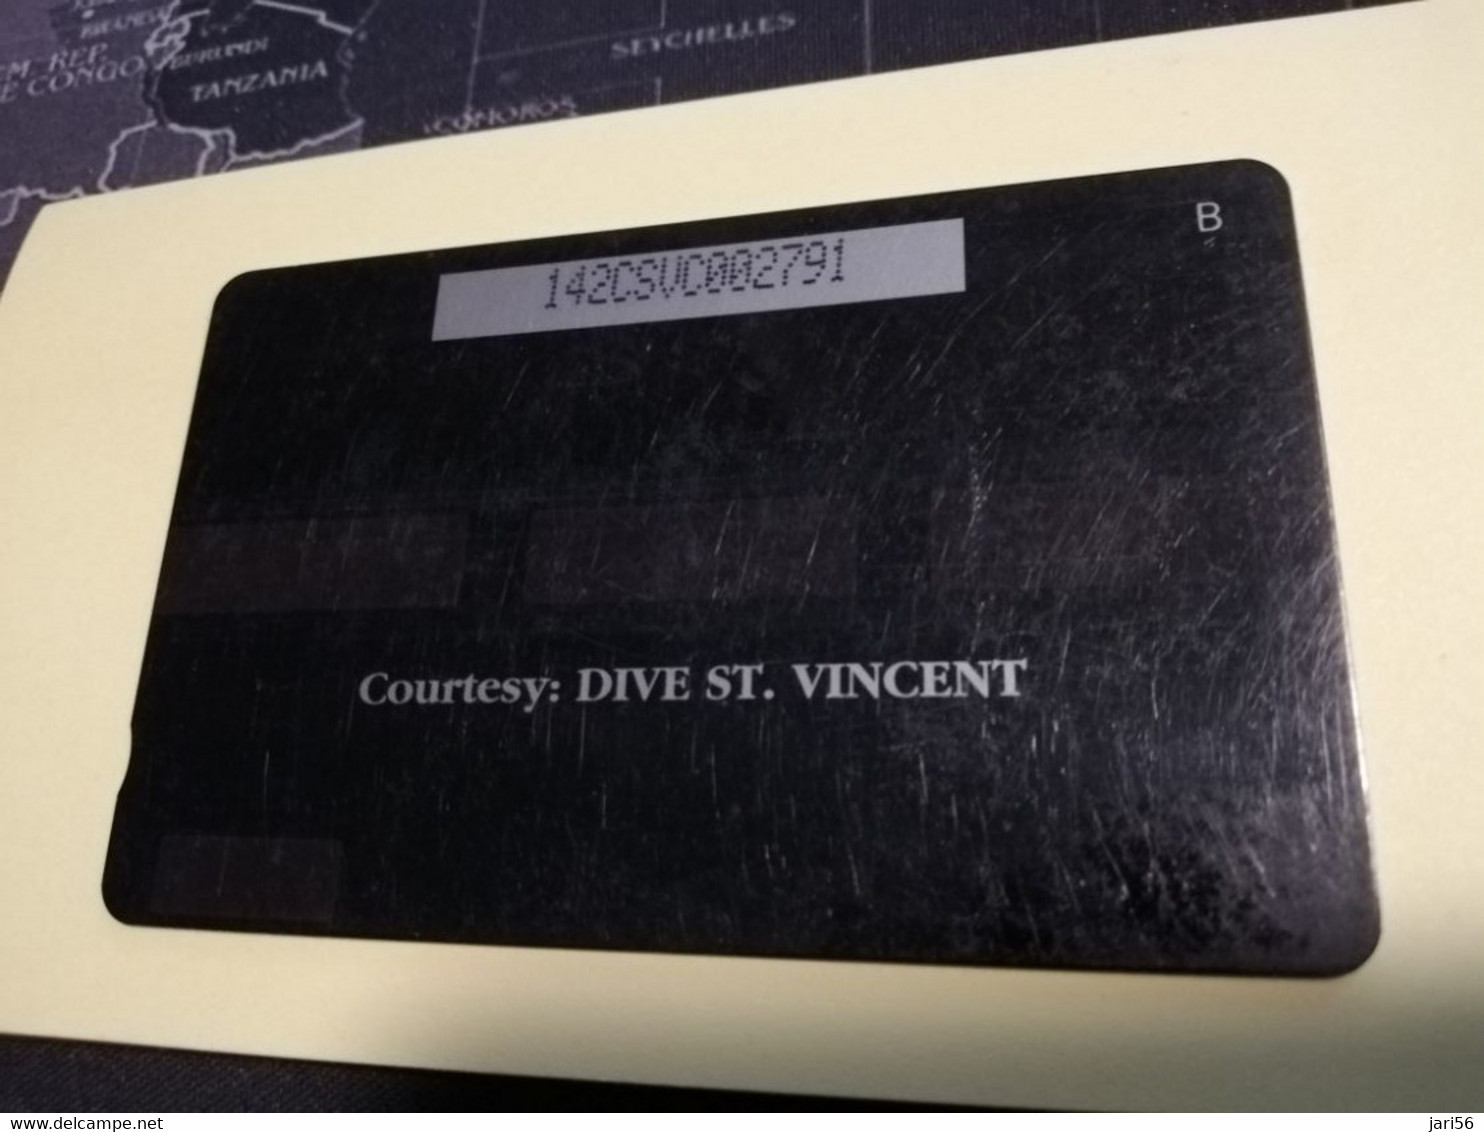 ST VINCENT & GRENADINES  GPT CARD   $ 20,- 142CSVC   GIANT SEA ANEMONE               C&W    Fine Used  Card  **3389** - Saint-Vincent-et-les-Grenadines